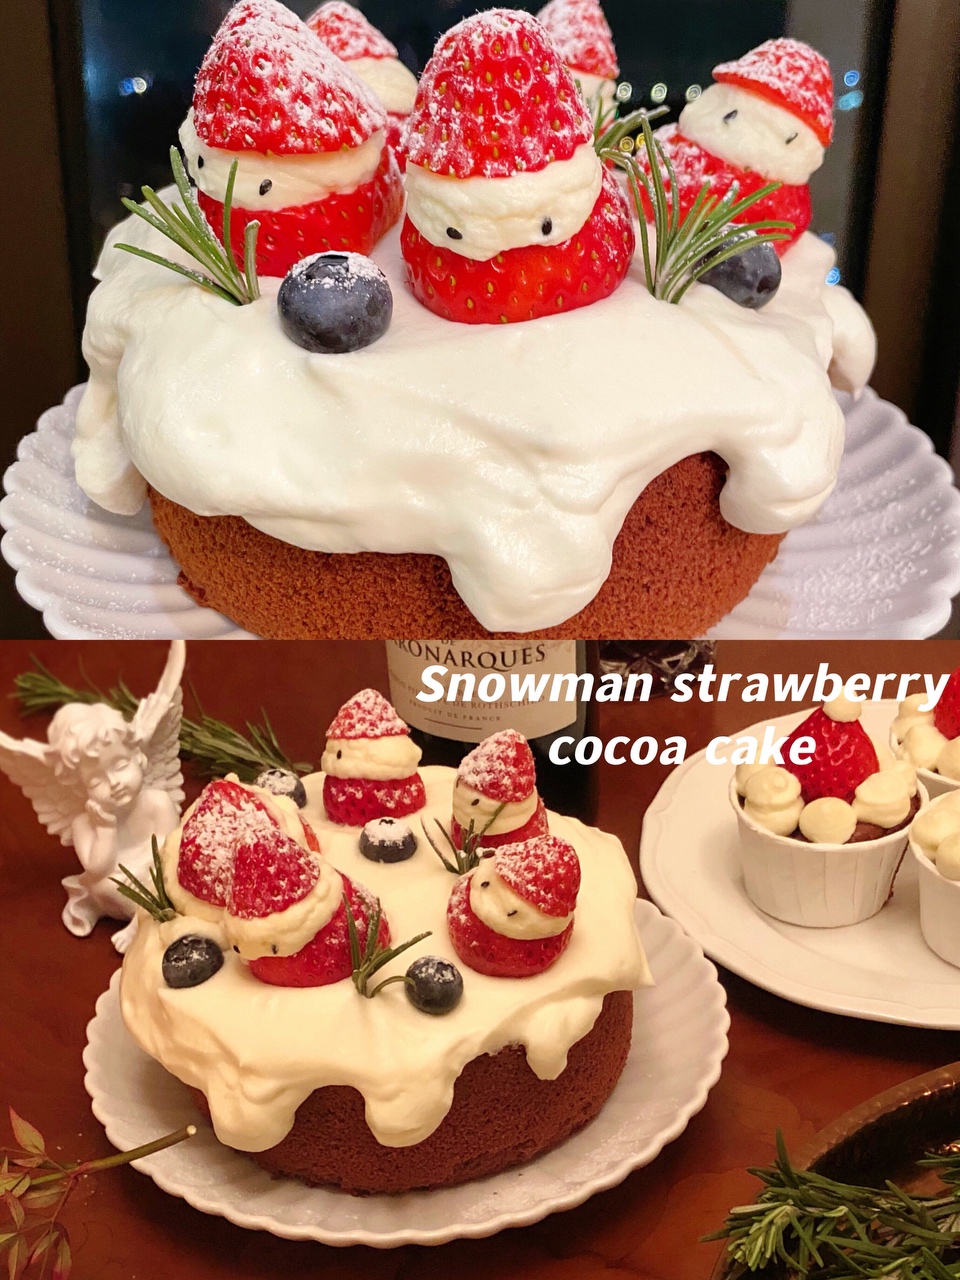 高颜值免抹面|圣诞雪人草莓可可蛋糕的做法